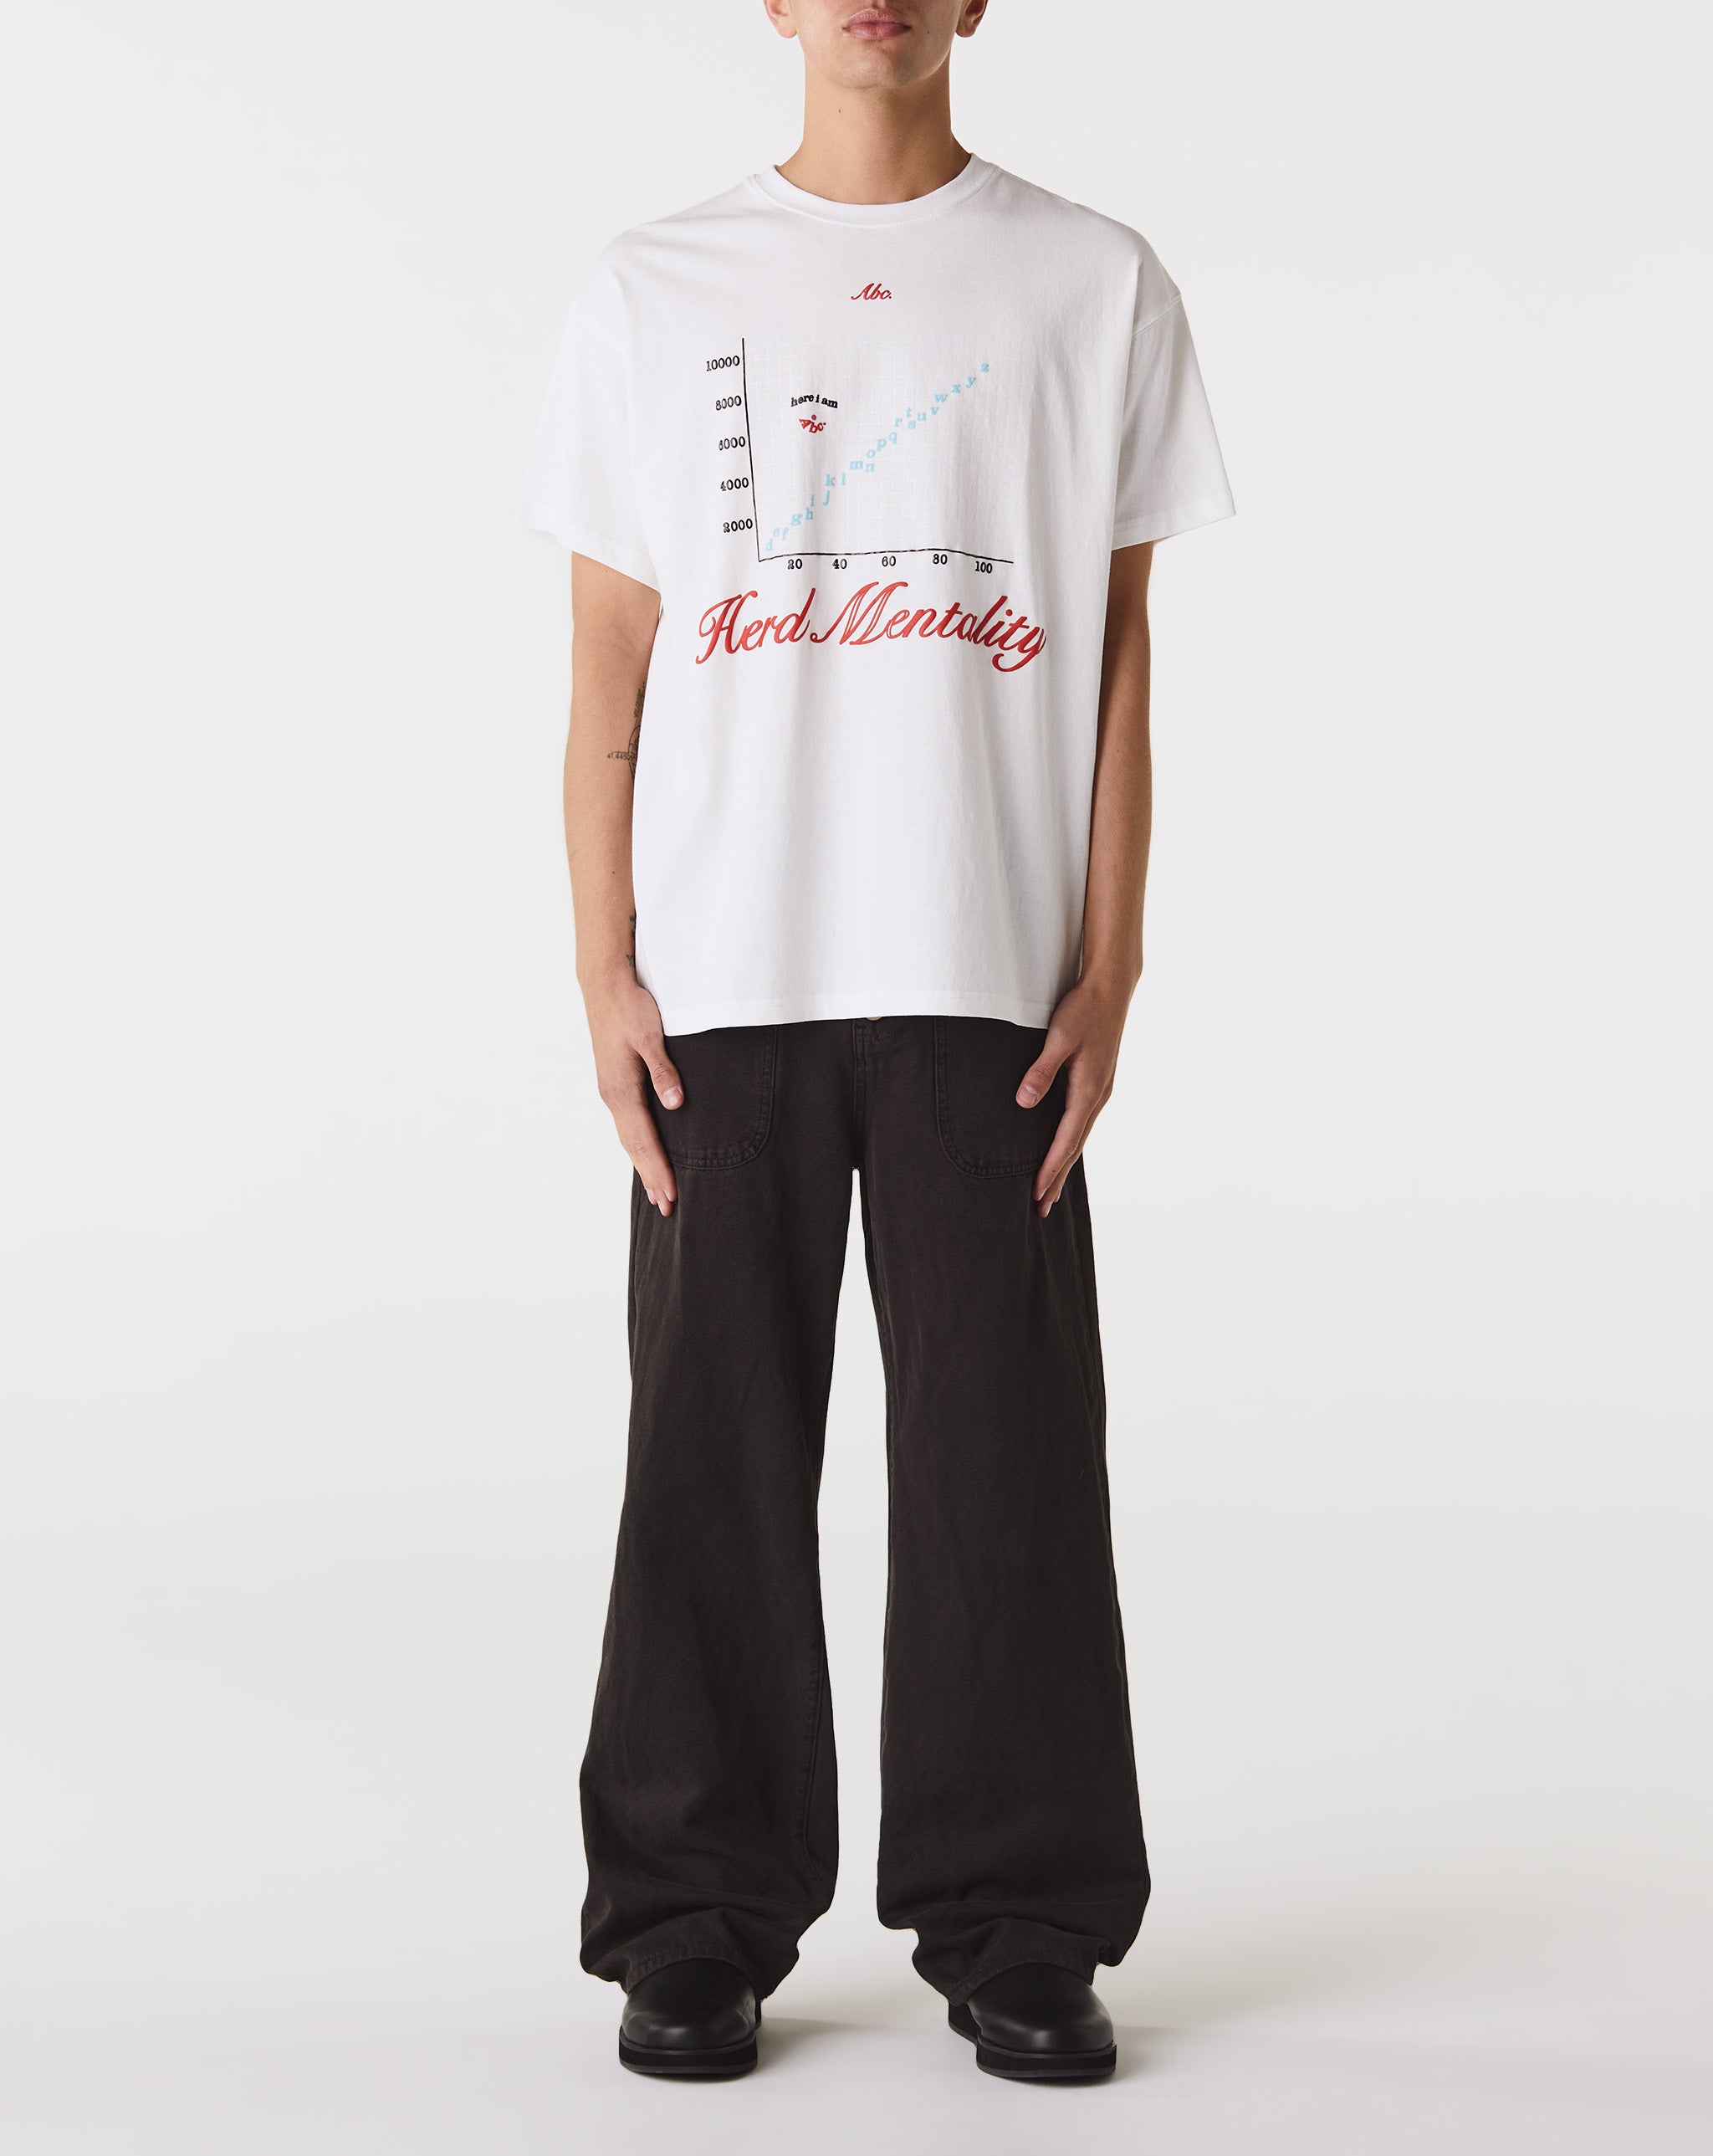 Chloe leather mini skirt Herd Mentality T-Shirt  - Cheap Cerbe Jordan outlet